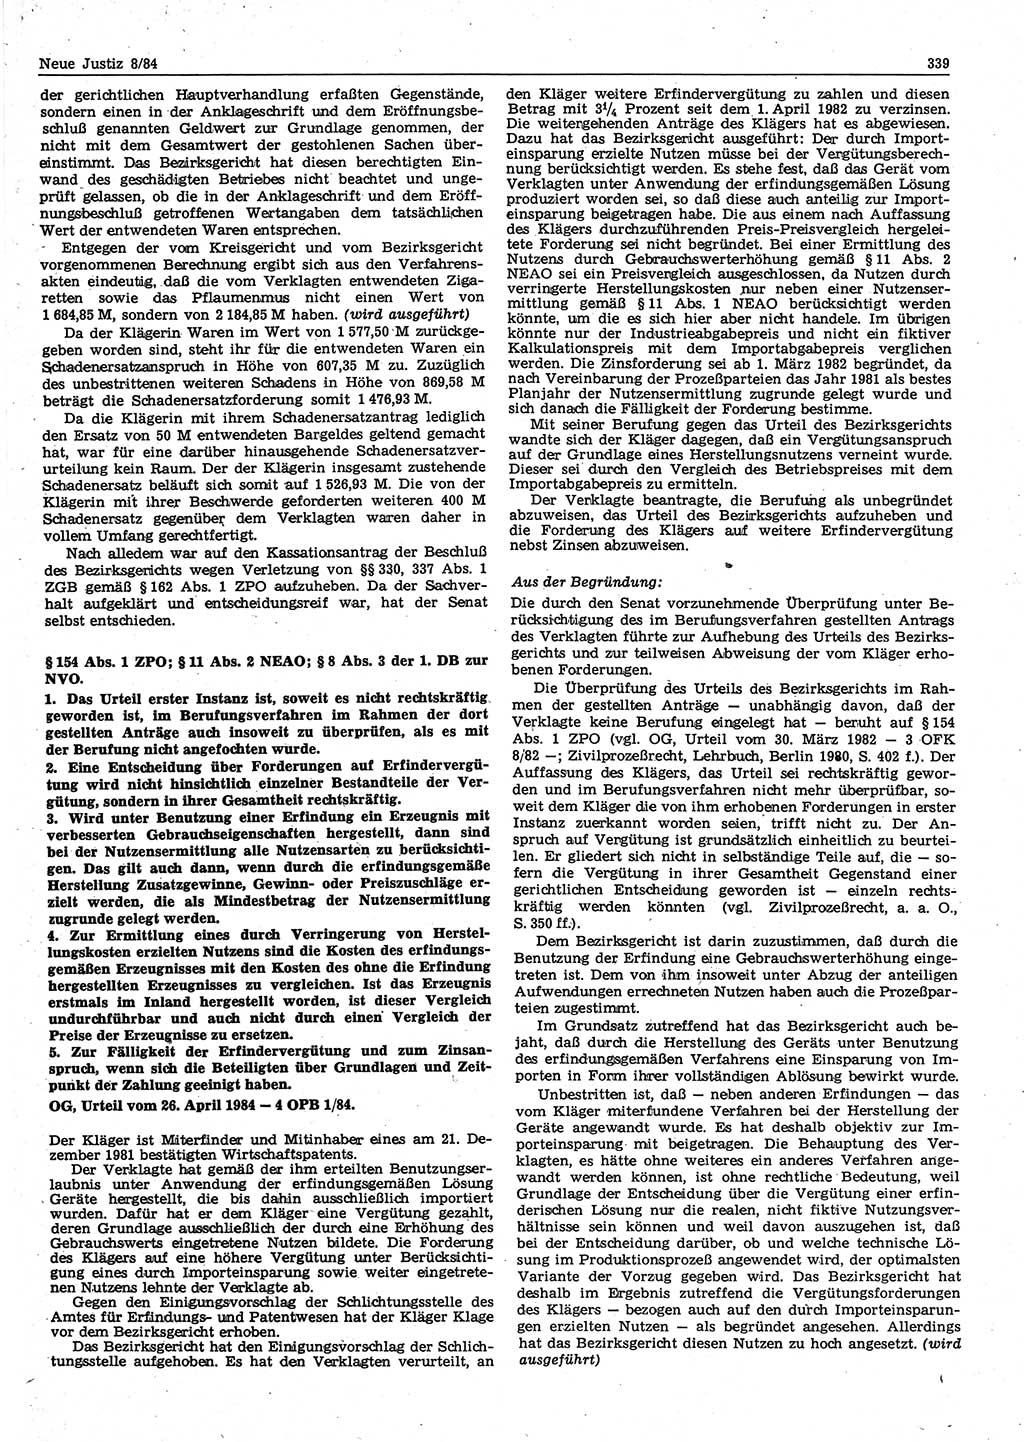 Neue Justiz (NJ), Zeitschrift für sozialistisches Recht und Gesetzlichkeit [Deutsche Demokratische Republik (DDR)], 38. Jahrgang 1984, Seite 339 (NJ DDR 1984, S. 339)